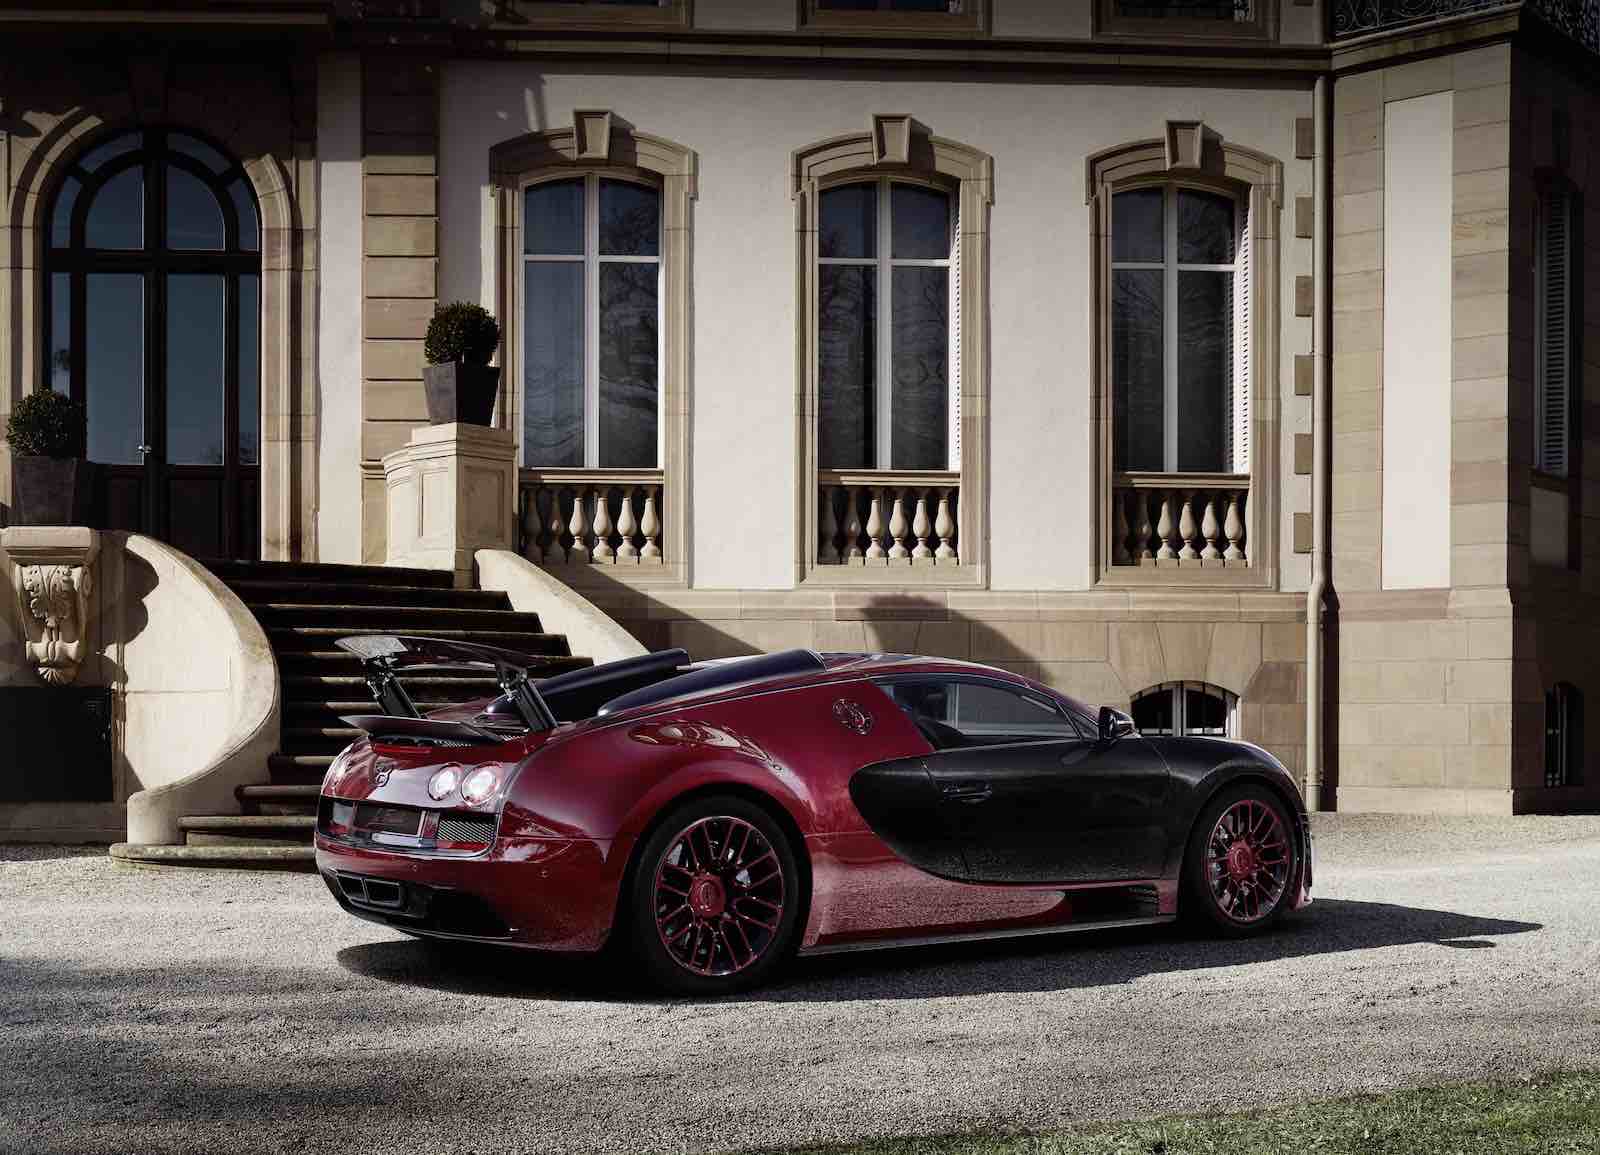 Vea este vídeo de la fabricación del último Bugatti Veyron “La Finale”